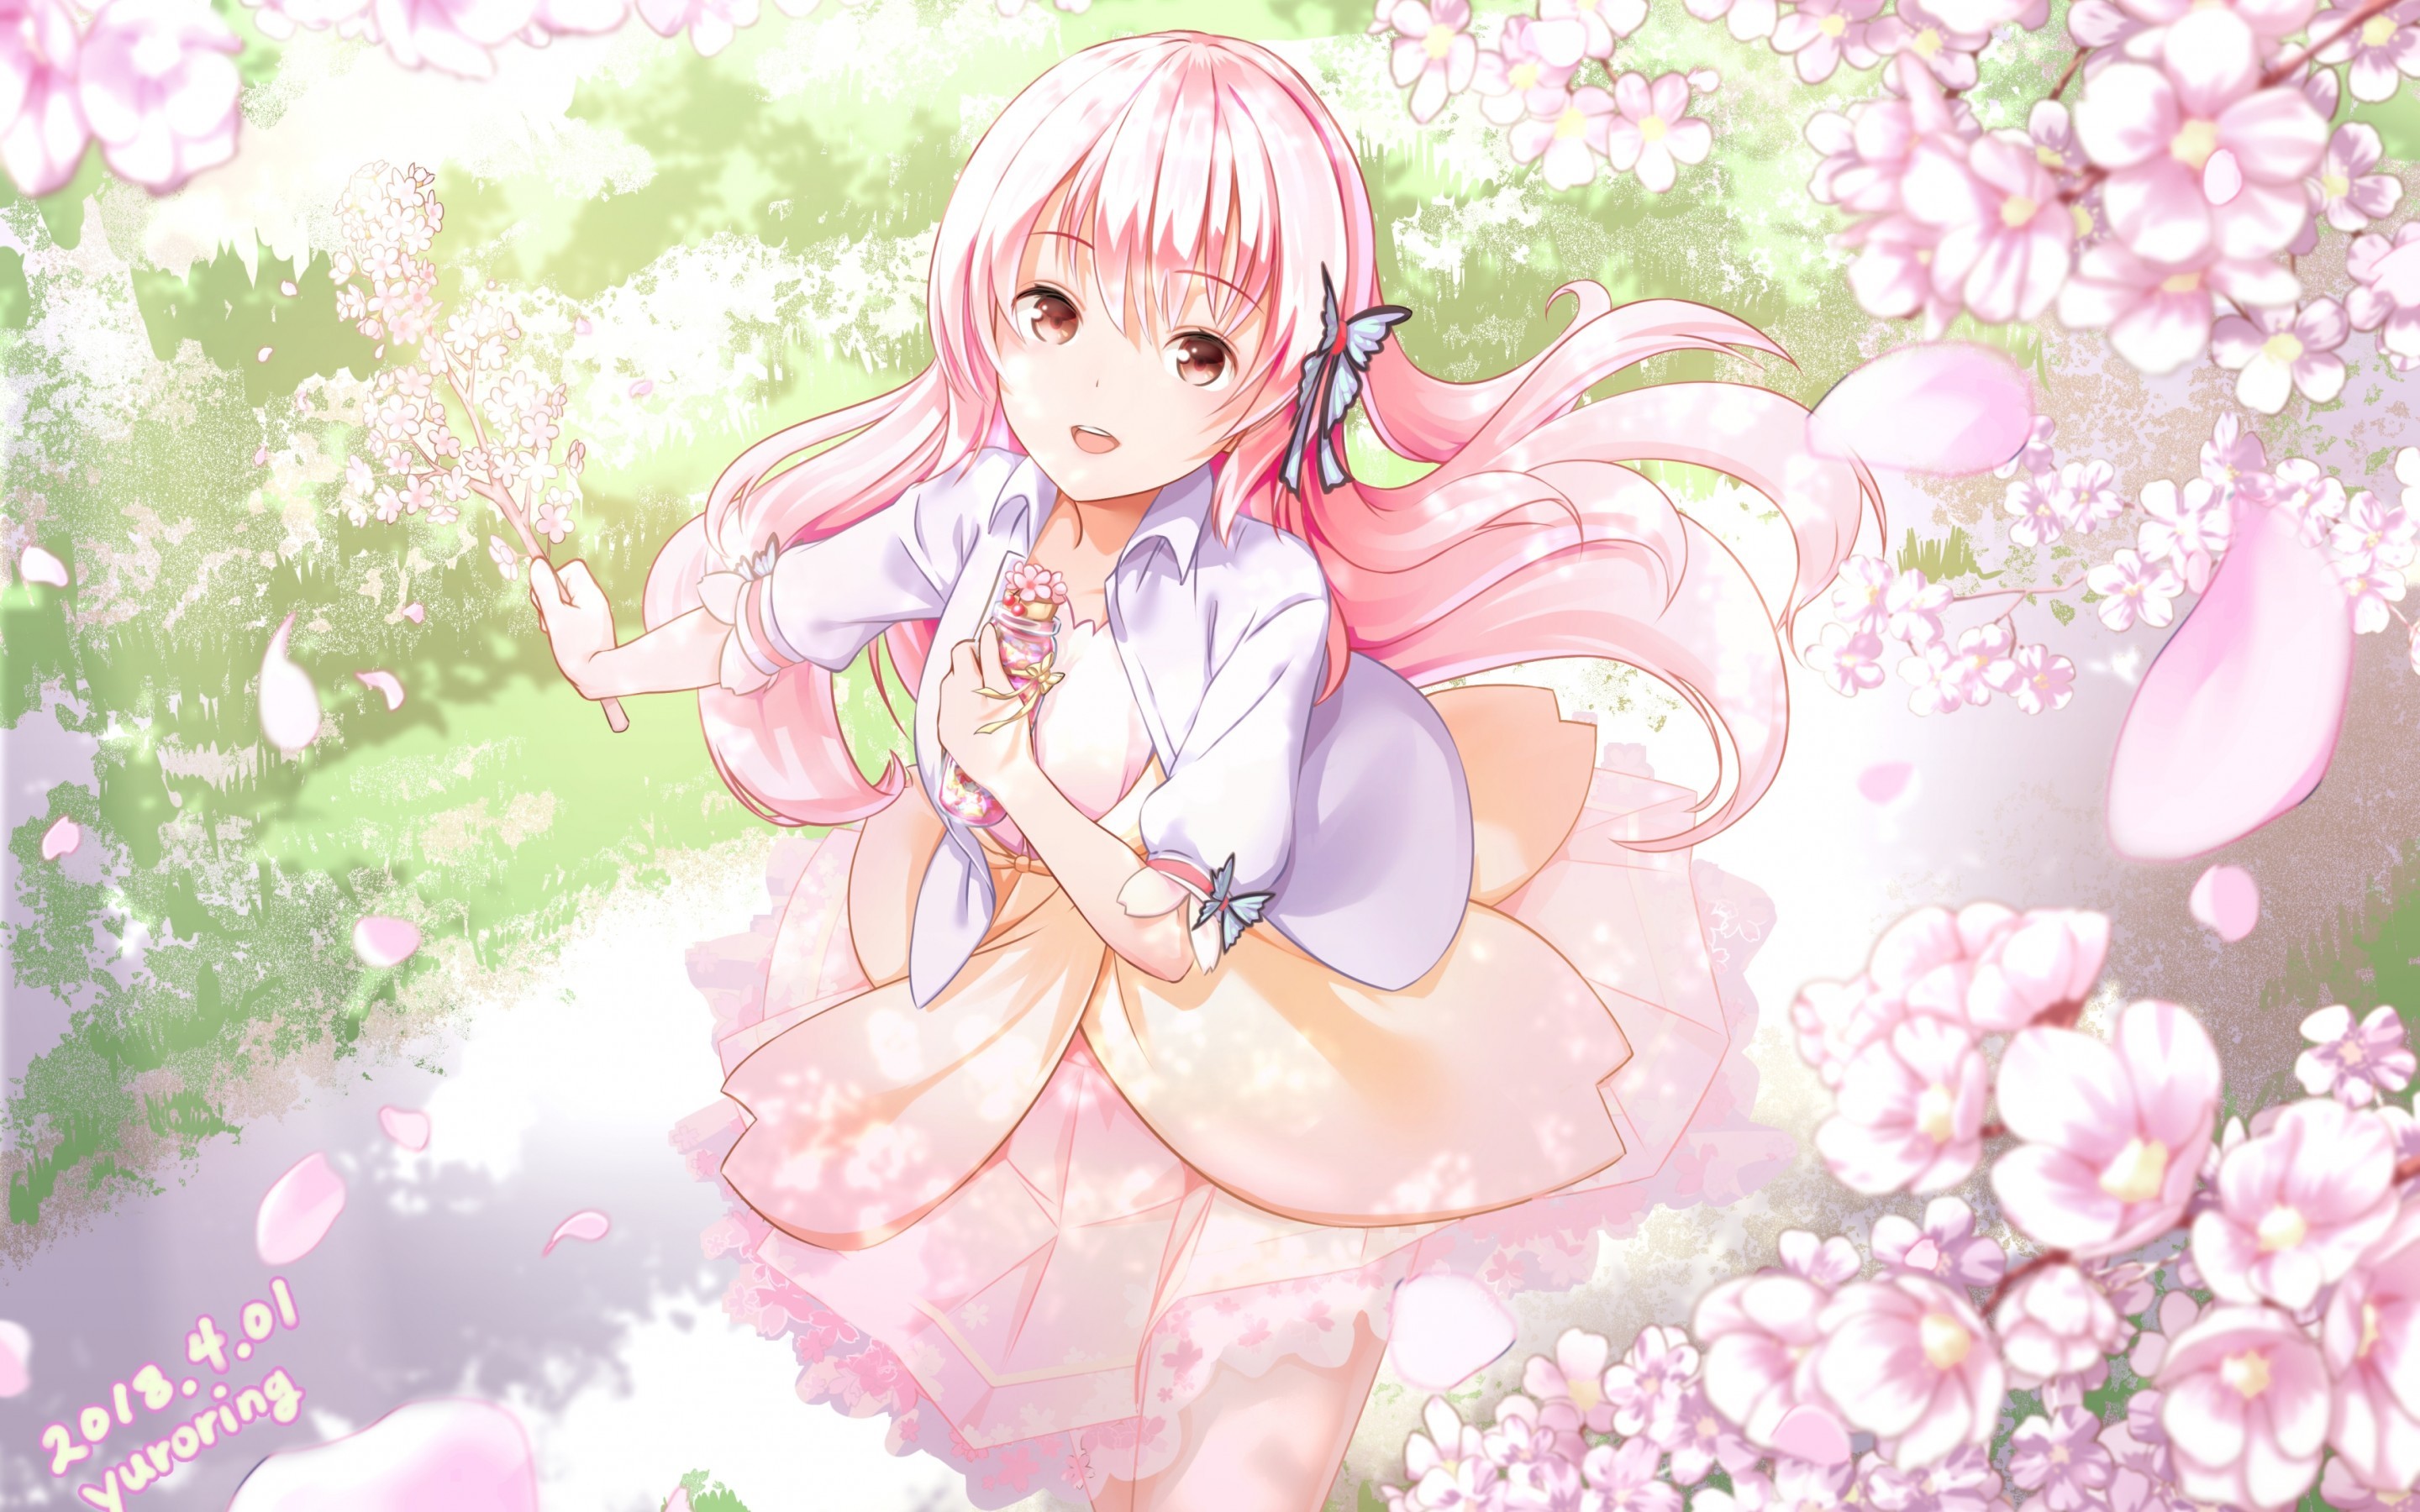 Anime Girl, Sakura Blossom, Pink Hair - Anime Girl With Sakura Flower - HD Wallpaper 